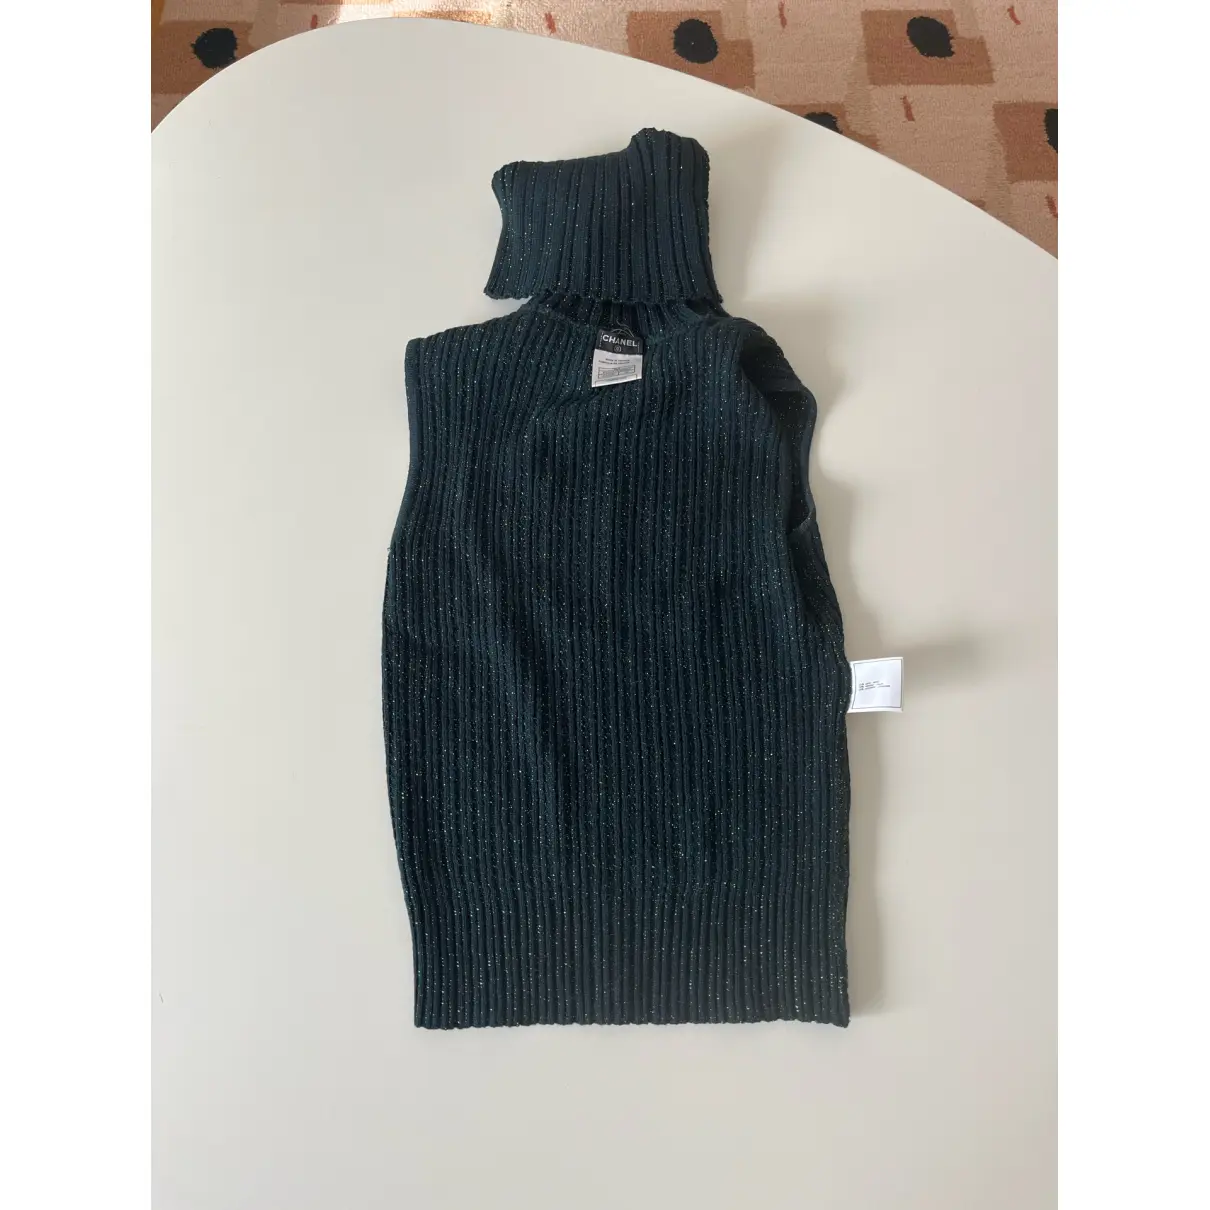 Buy Chanel Wool jumper online